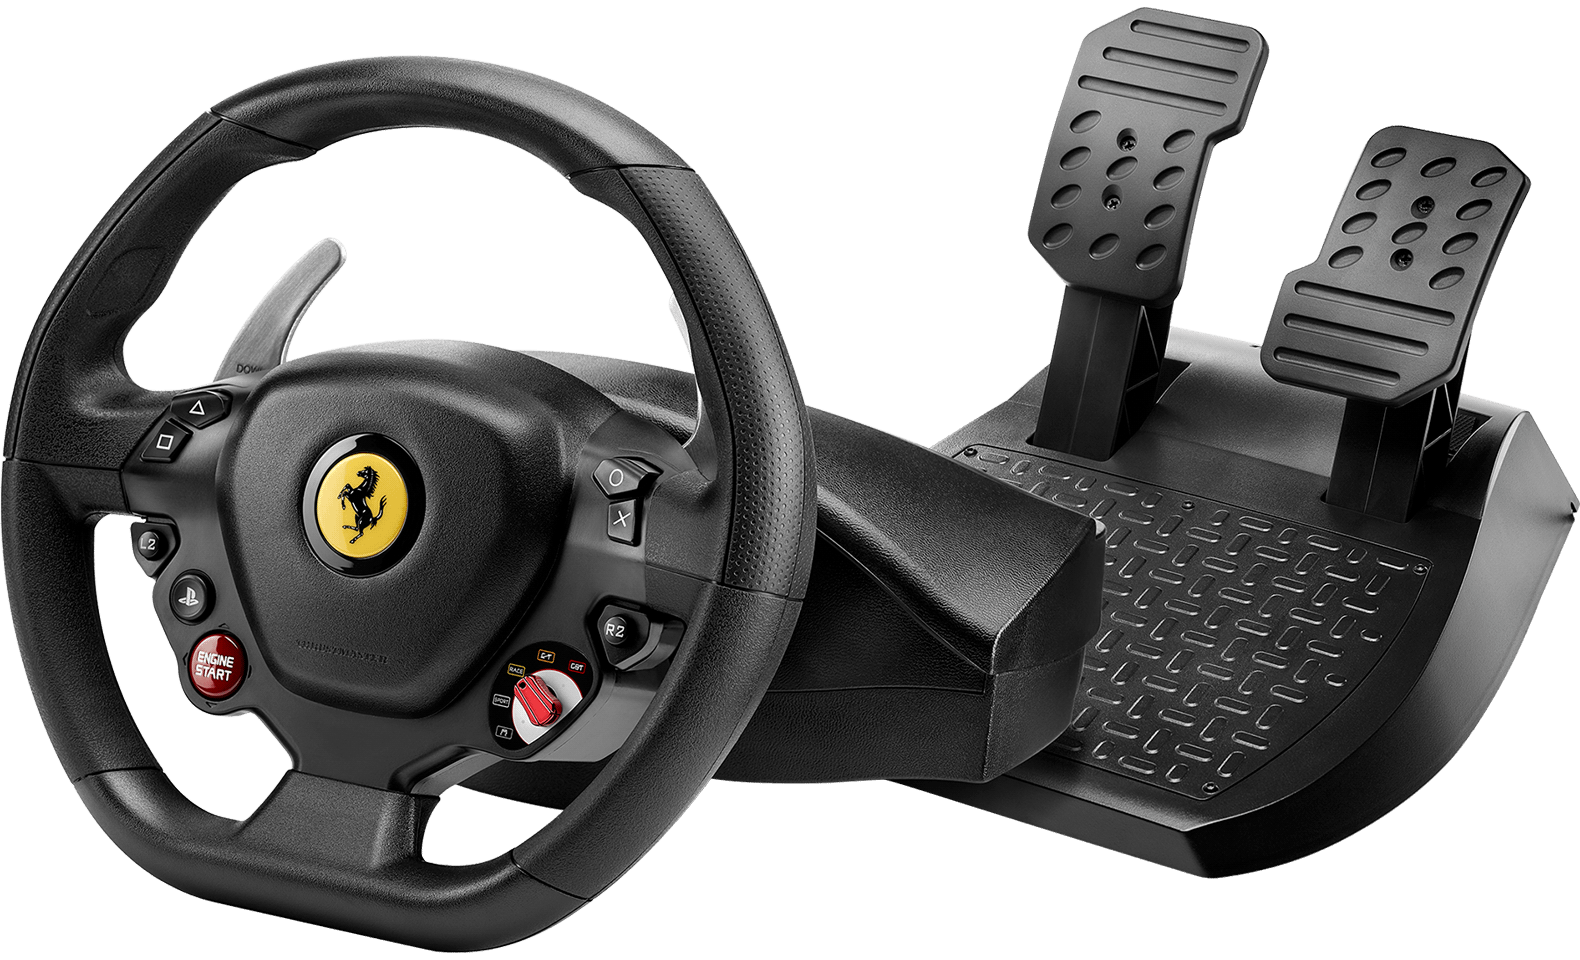 Volante para PlayStation Thrustmaster T80 Ferrari a precio de socio